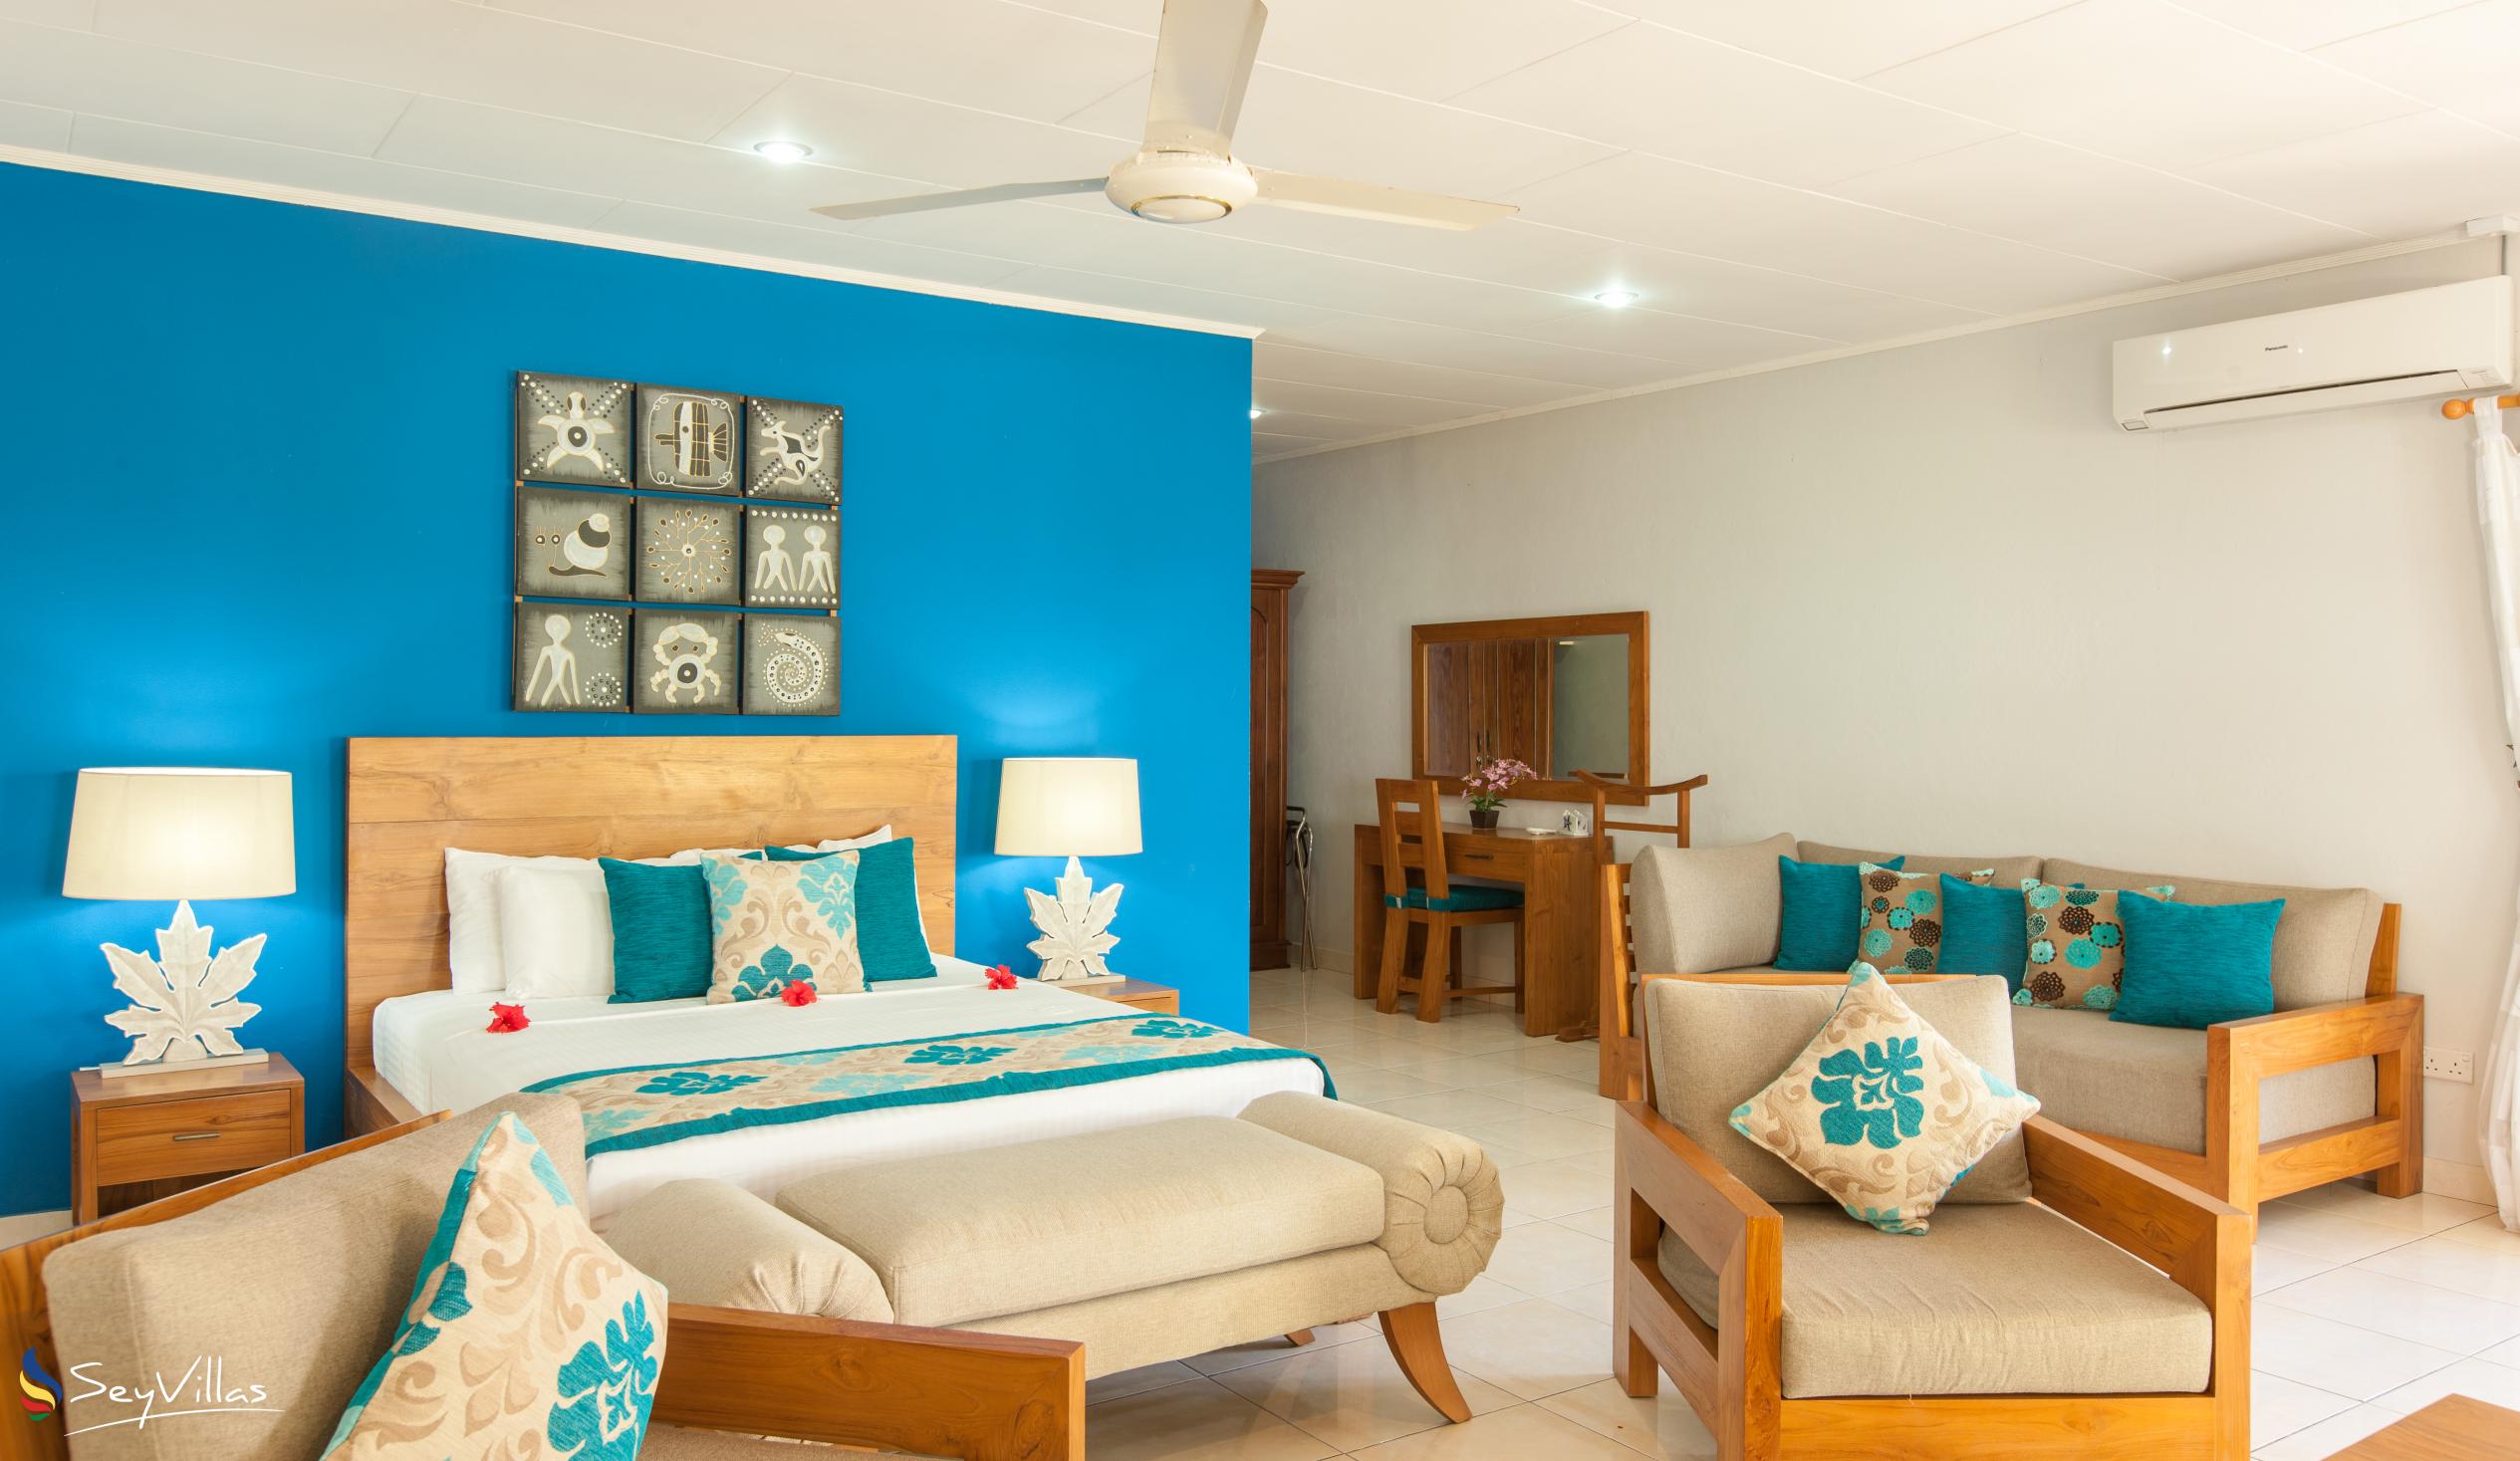 Photo 40: Villas de Mer - Junior Suite - Praslin (Seychelles)